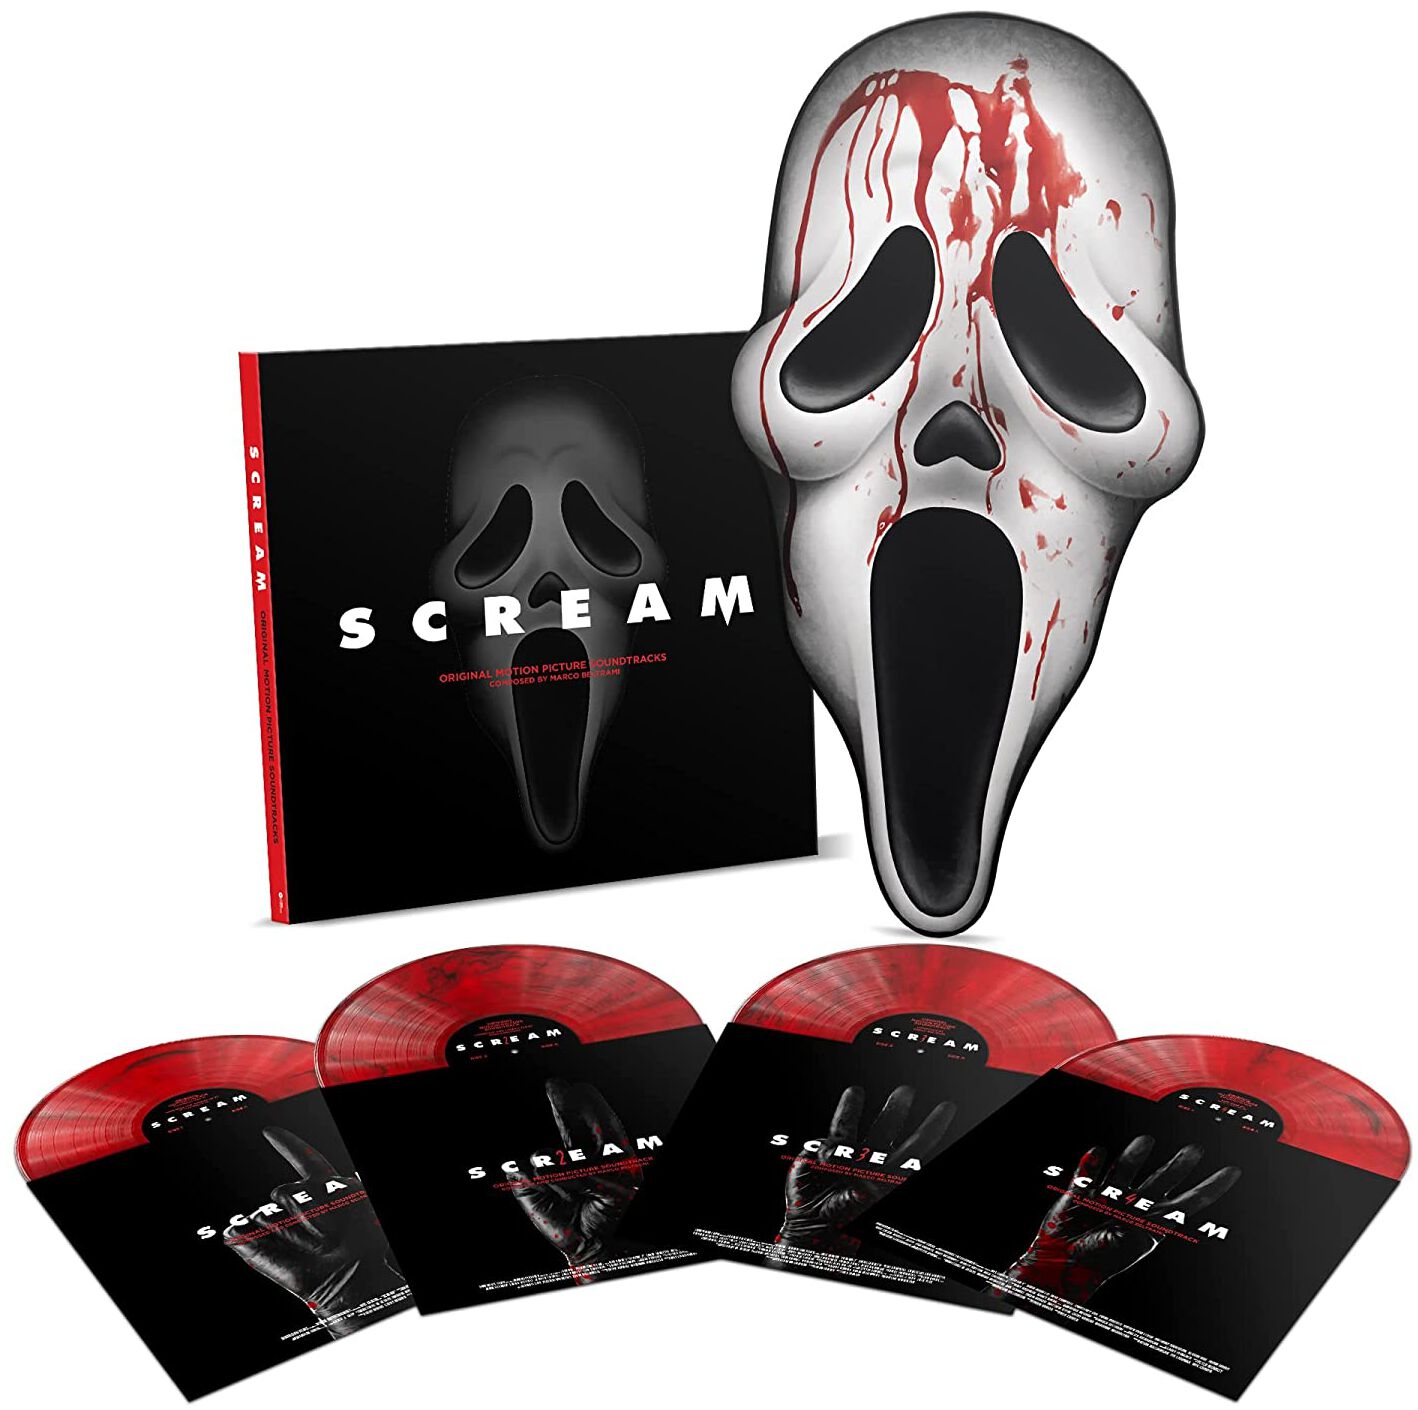 Scream (Film) Scream: Original Motion Picture Score LP coloured